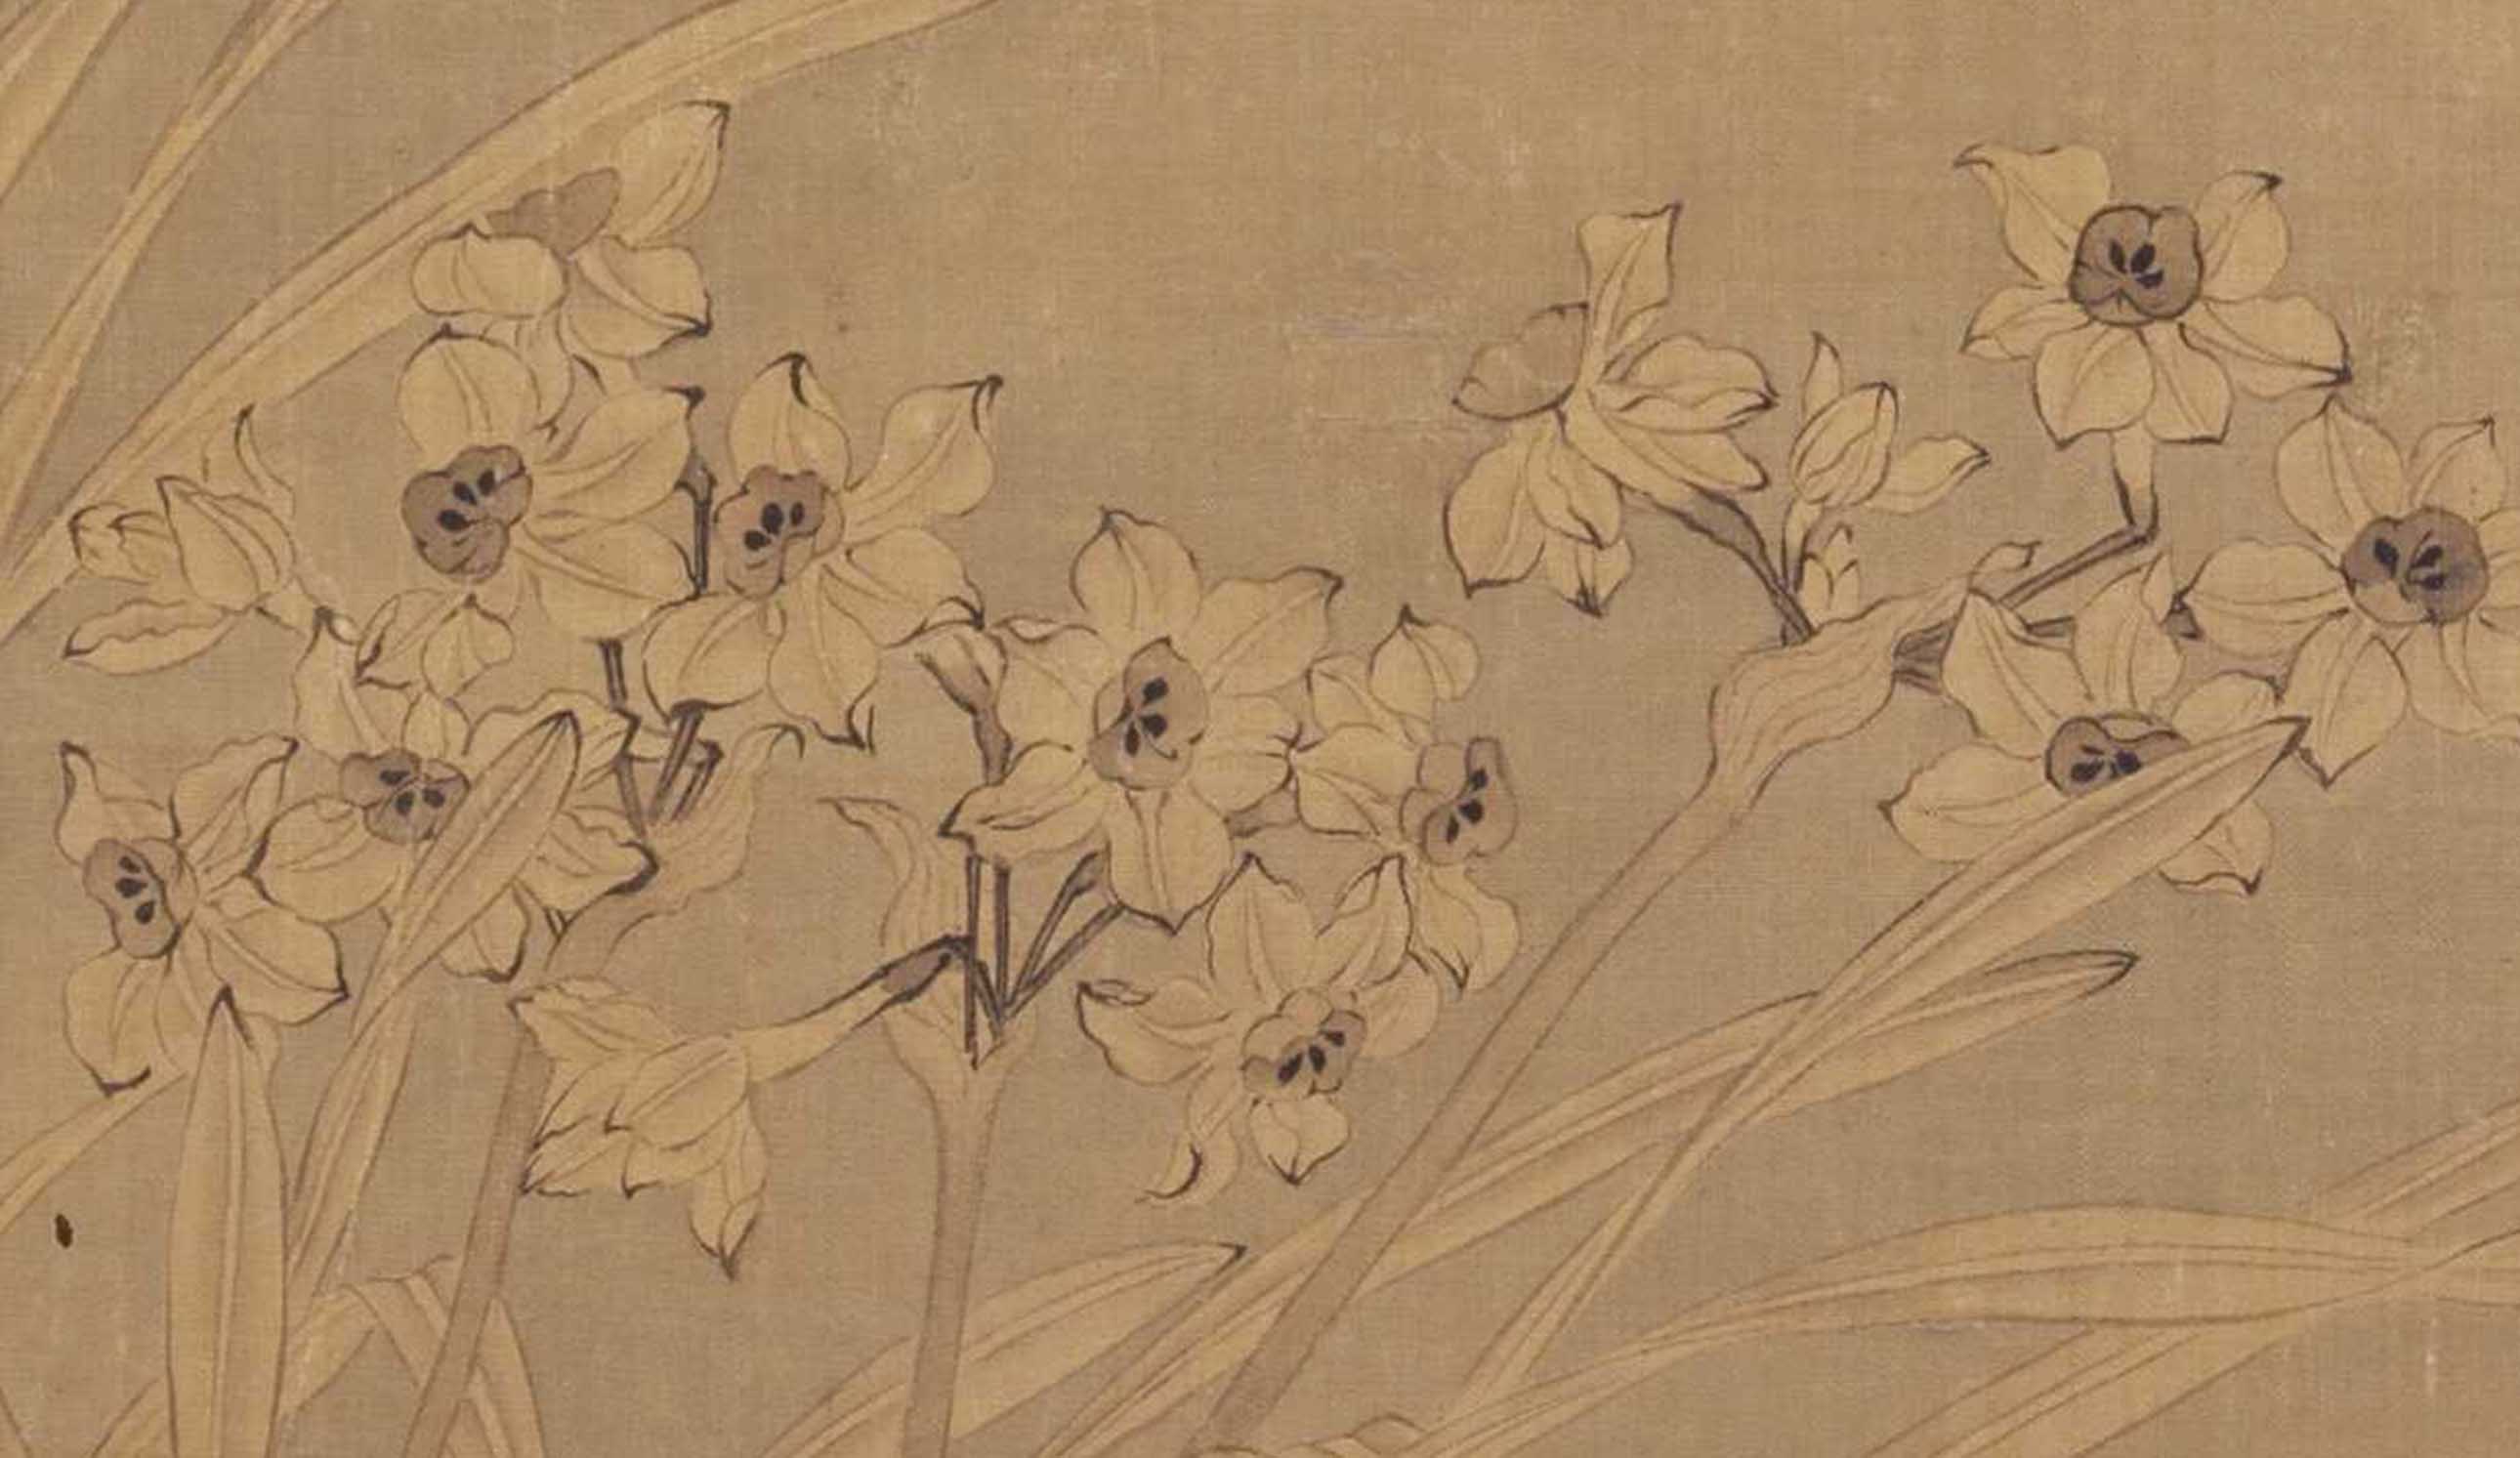 Chinese Antique Art Painting 清 恽寿平 双清图 Qing Yun Shouping Shuang Qing Tu